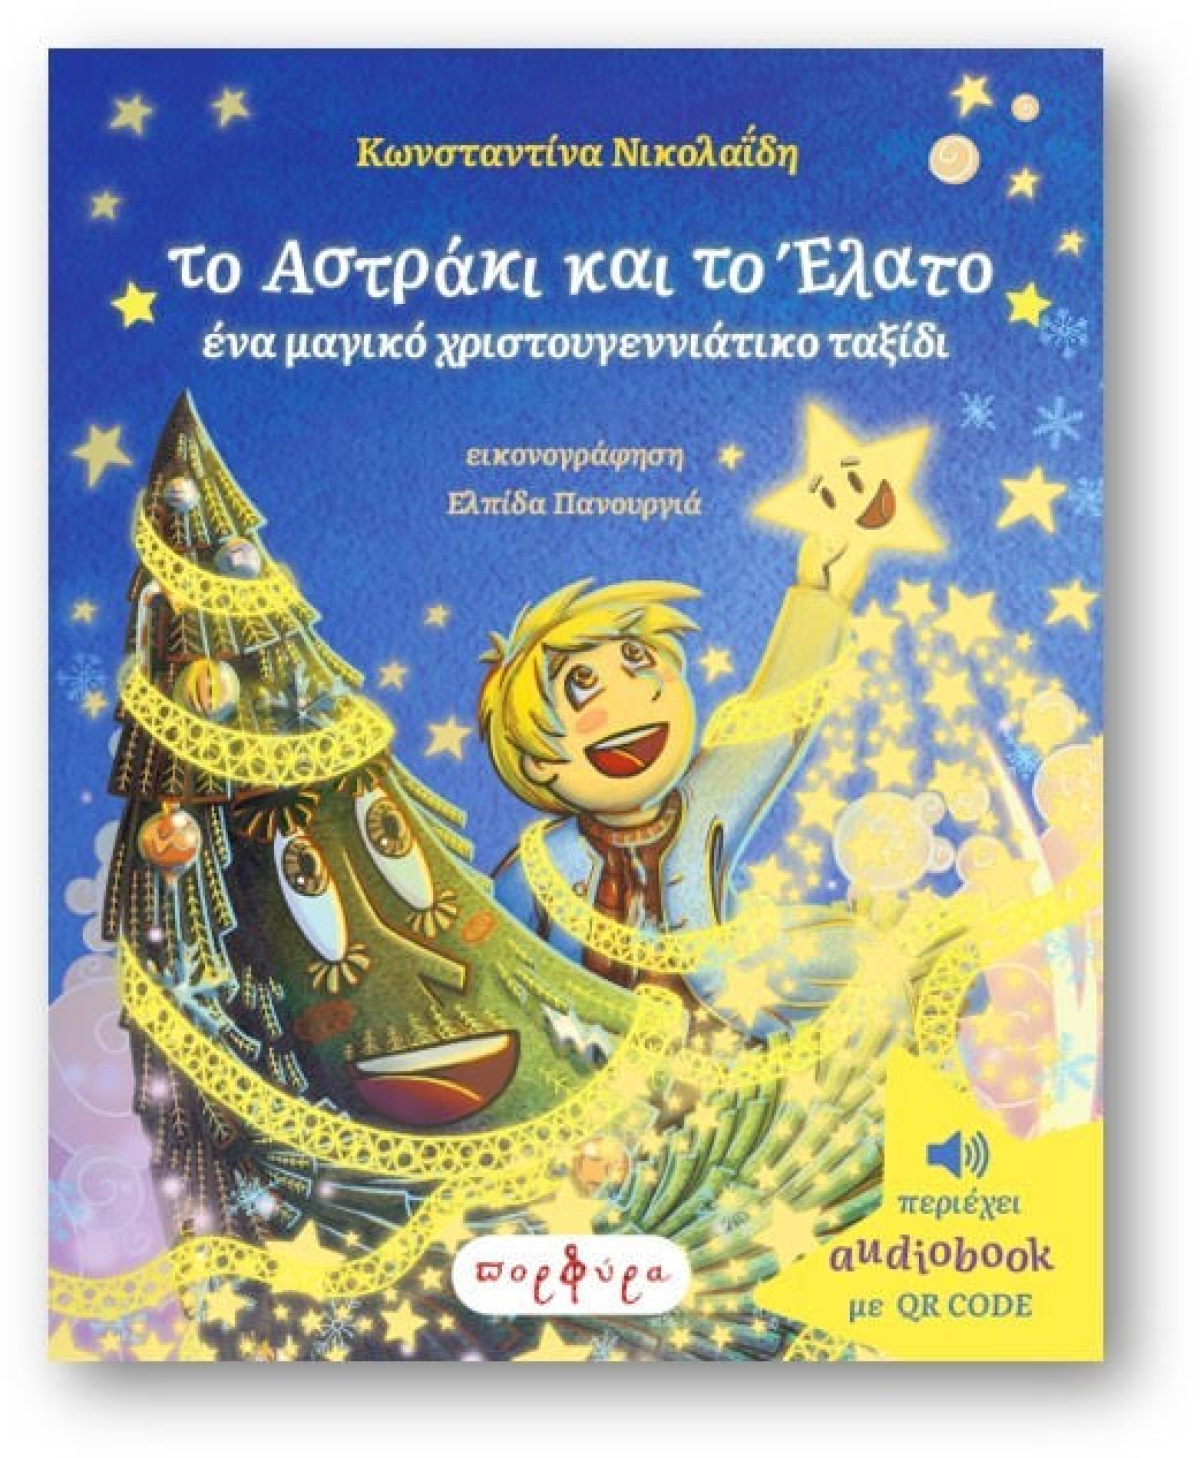 Το αστράκι και το έλατο-Ένα μαγικό χριστουγεννιάτικο ταξίδι-Παρουσίαση βιβλίου-Θεατρικό δρώμενο